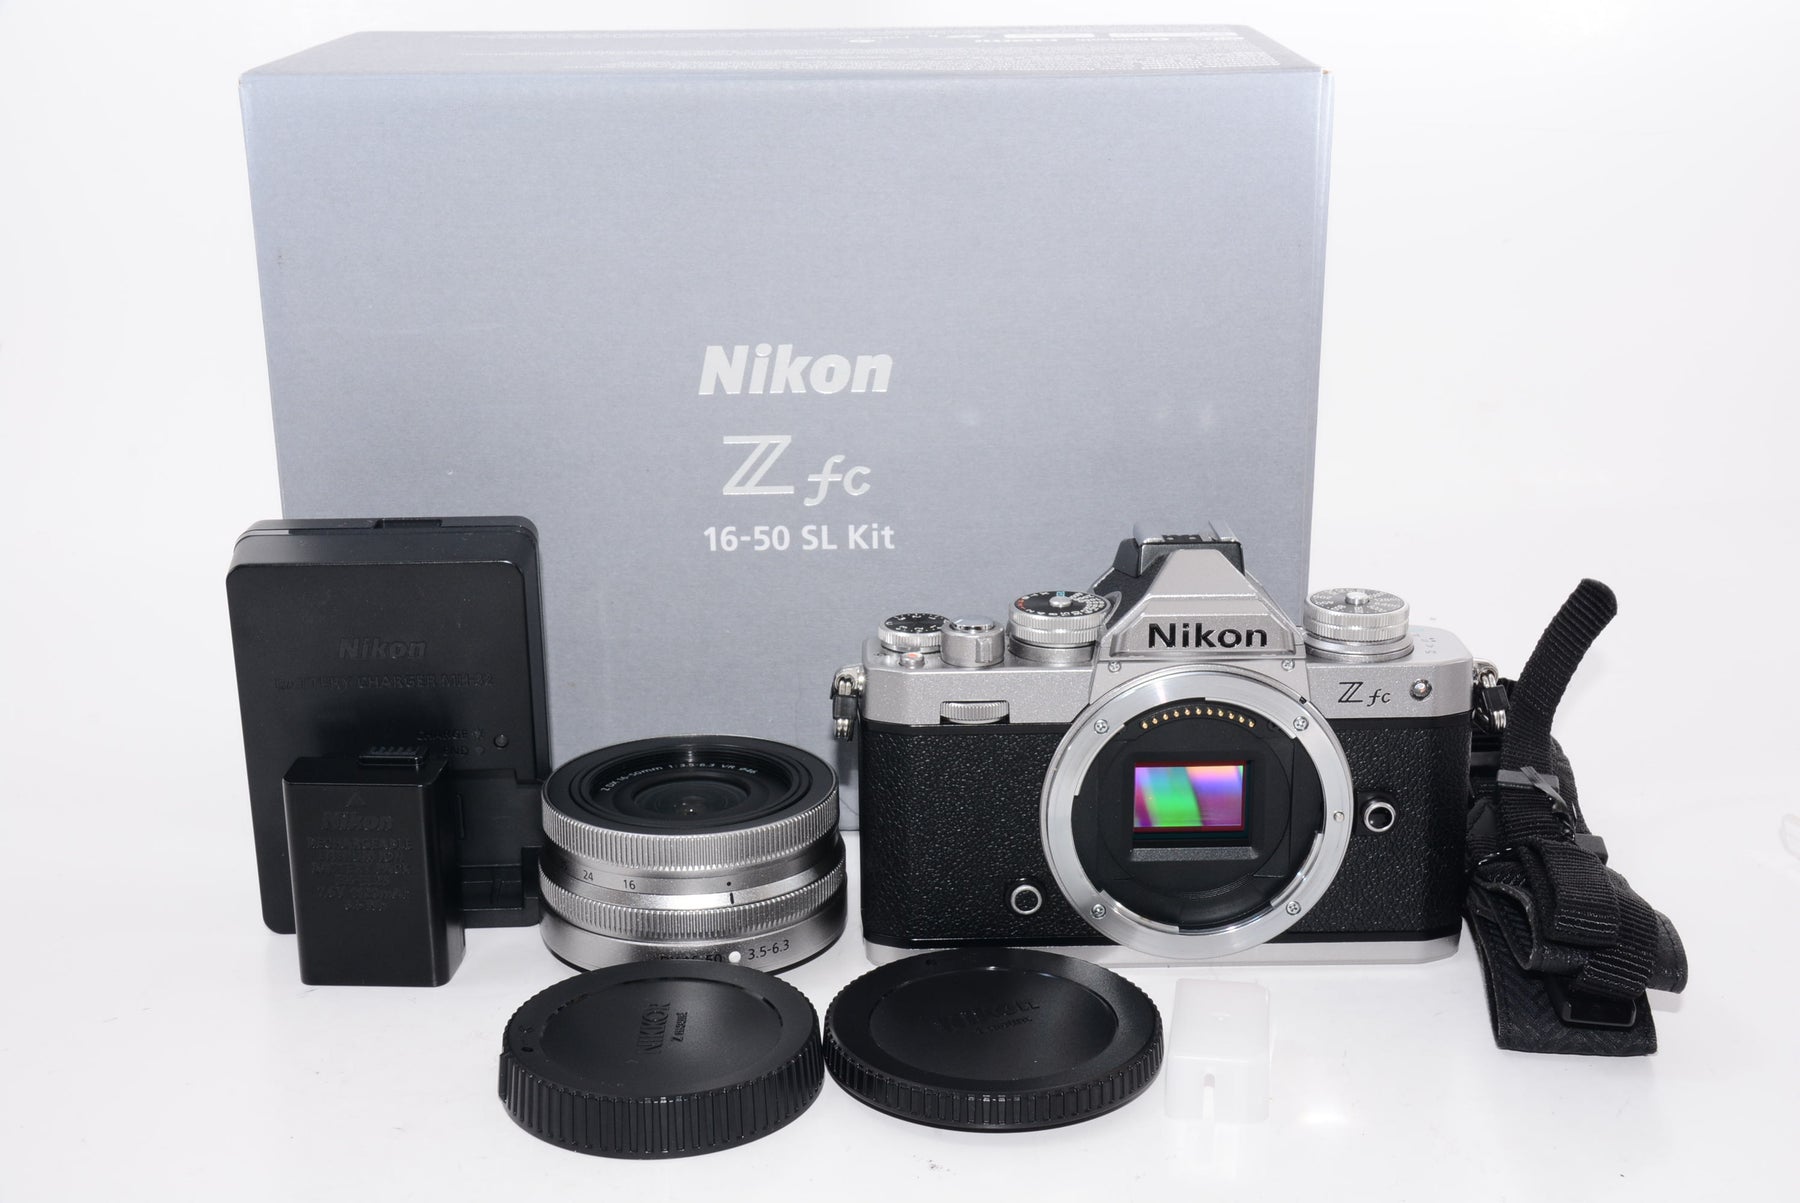 【外観特上級】Nikon ミラーレス一眼カメラ Z fc レンズキット NIKKOR Z DX 16-50mm f/3.5-6.3 VR シルバー  付属 ZfcLK16-50SL